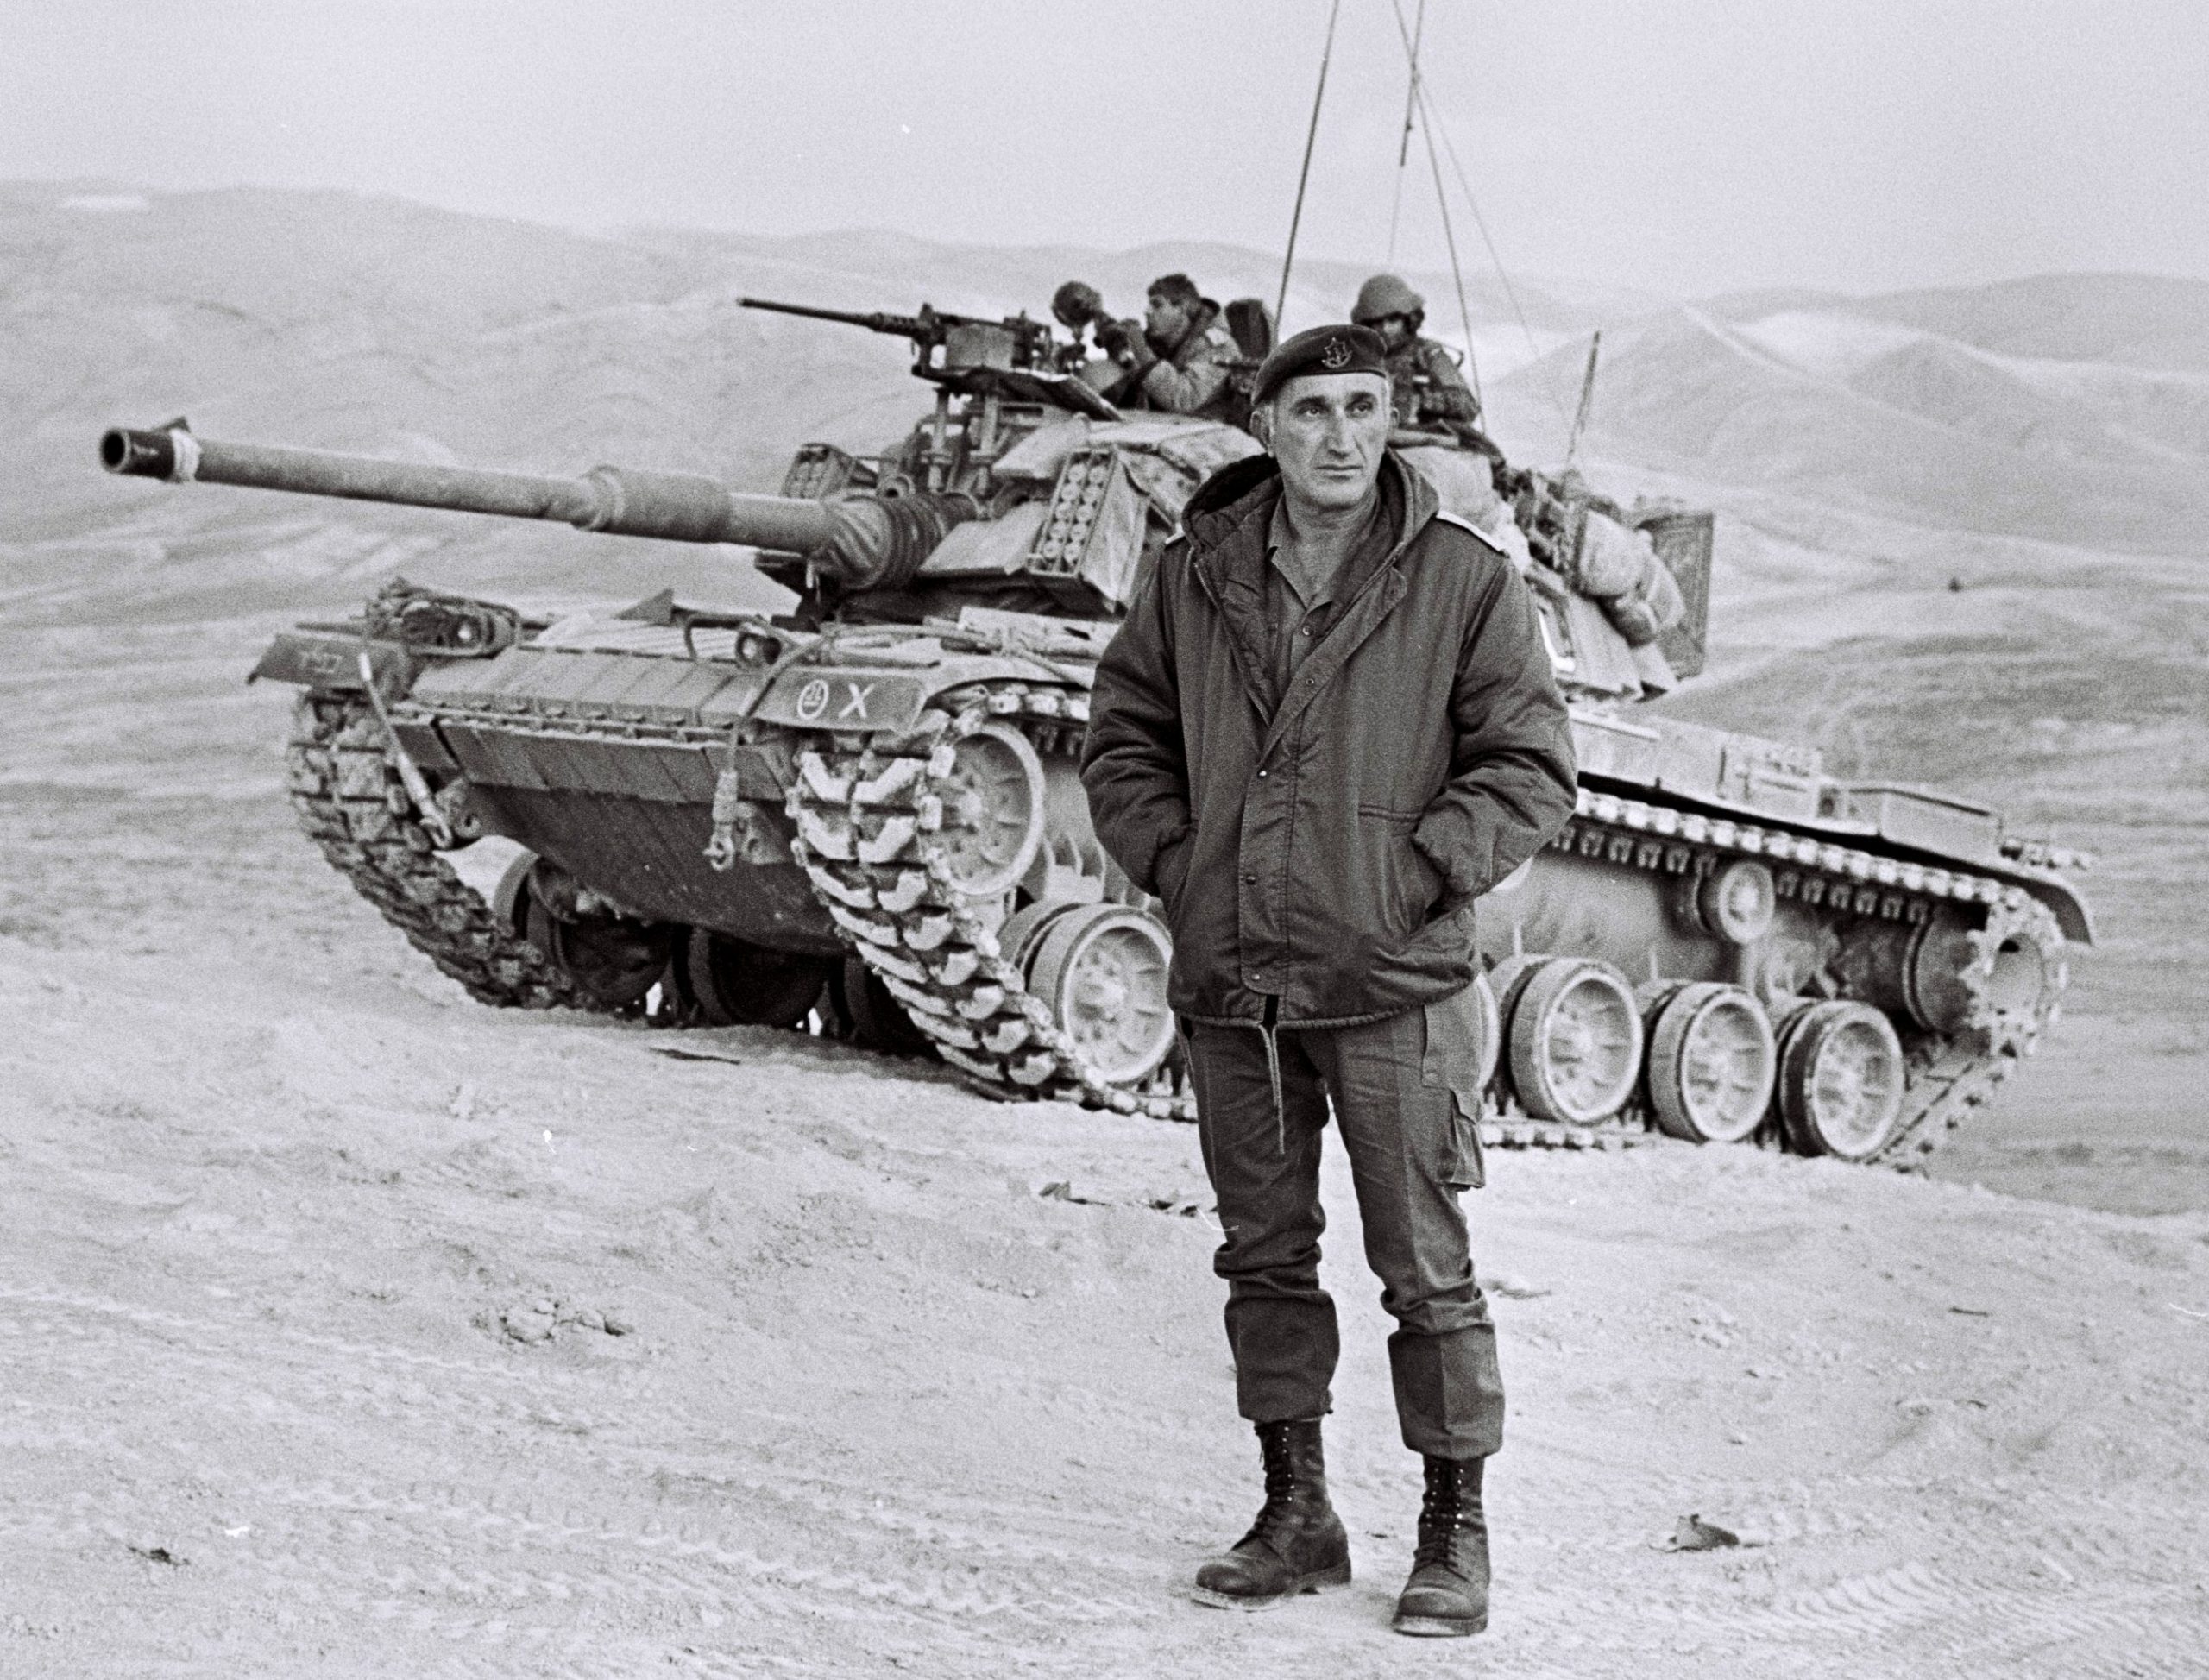 טנק מגח 6ר של חטיבה 500 במהלך אימון בבקעת הירדן. בחזית, הרמטכ"ל רב אלוף משה לוי ז"ל. צילום: חטיבה 500